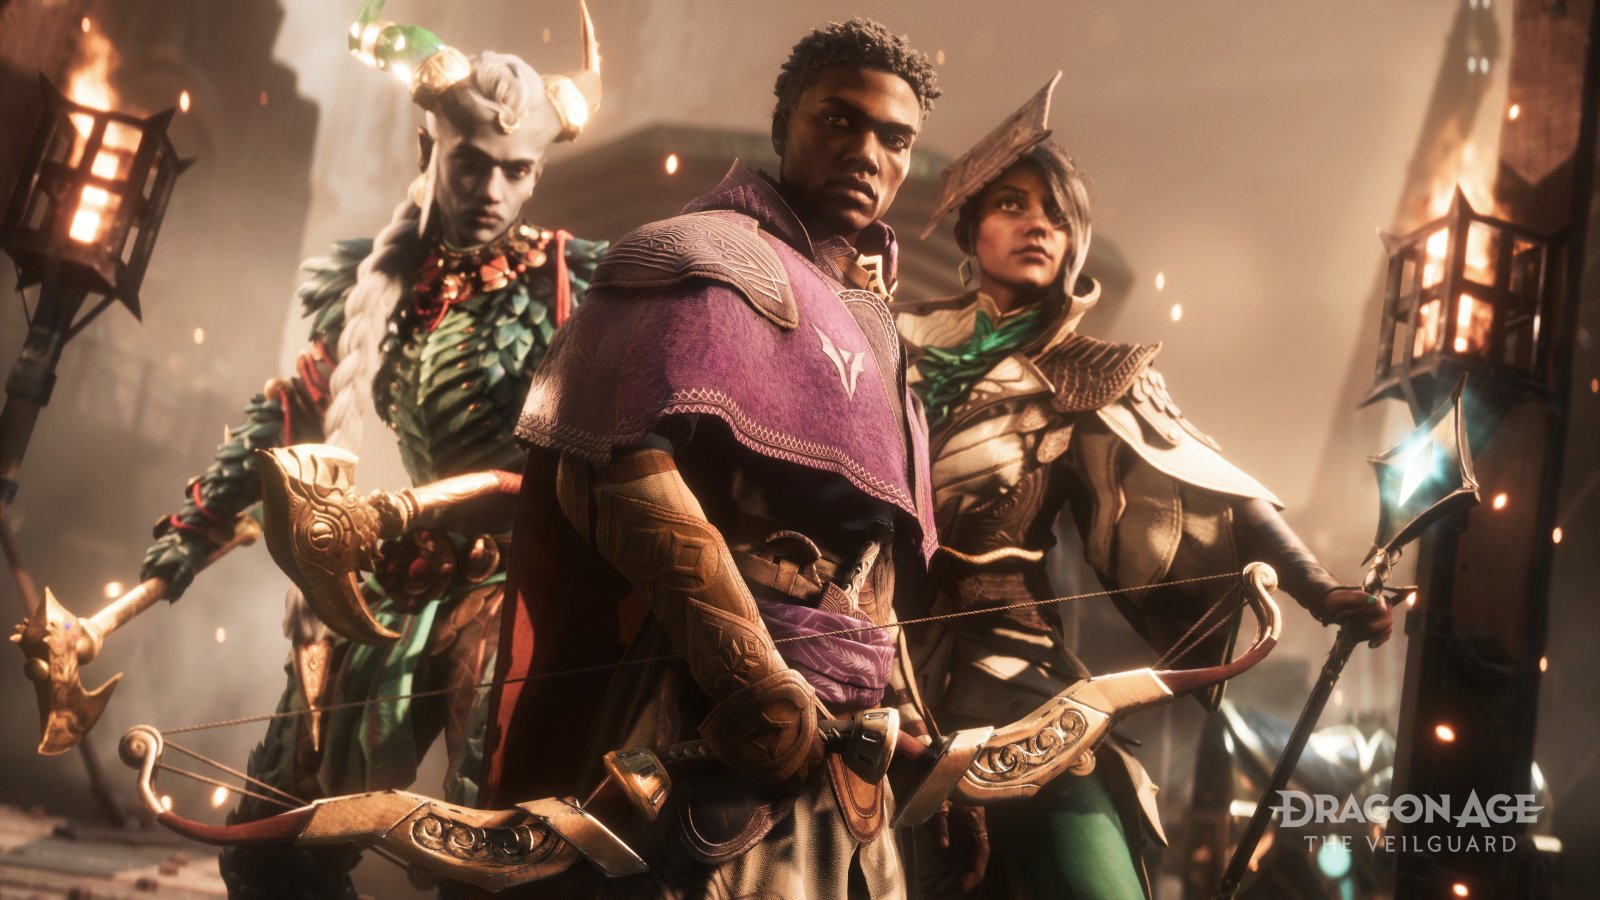 Alcuni dei personaggi di Dragon Age: The Veilguard